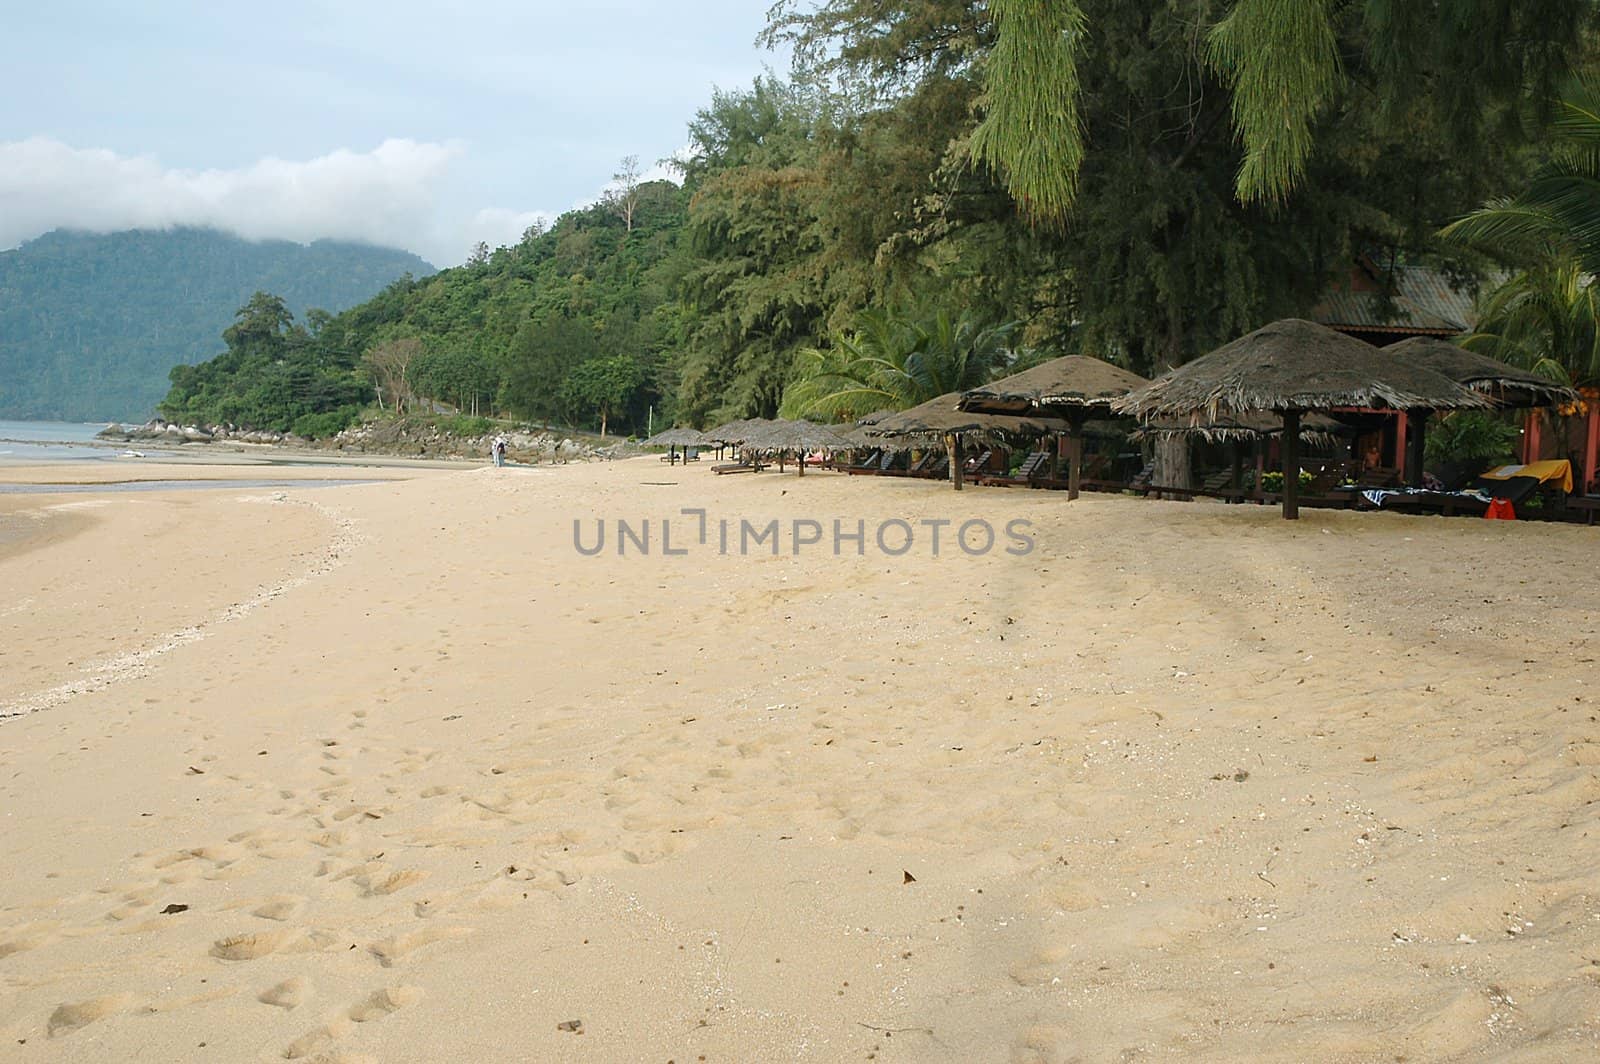 Beach huts on a sandy tropical beach